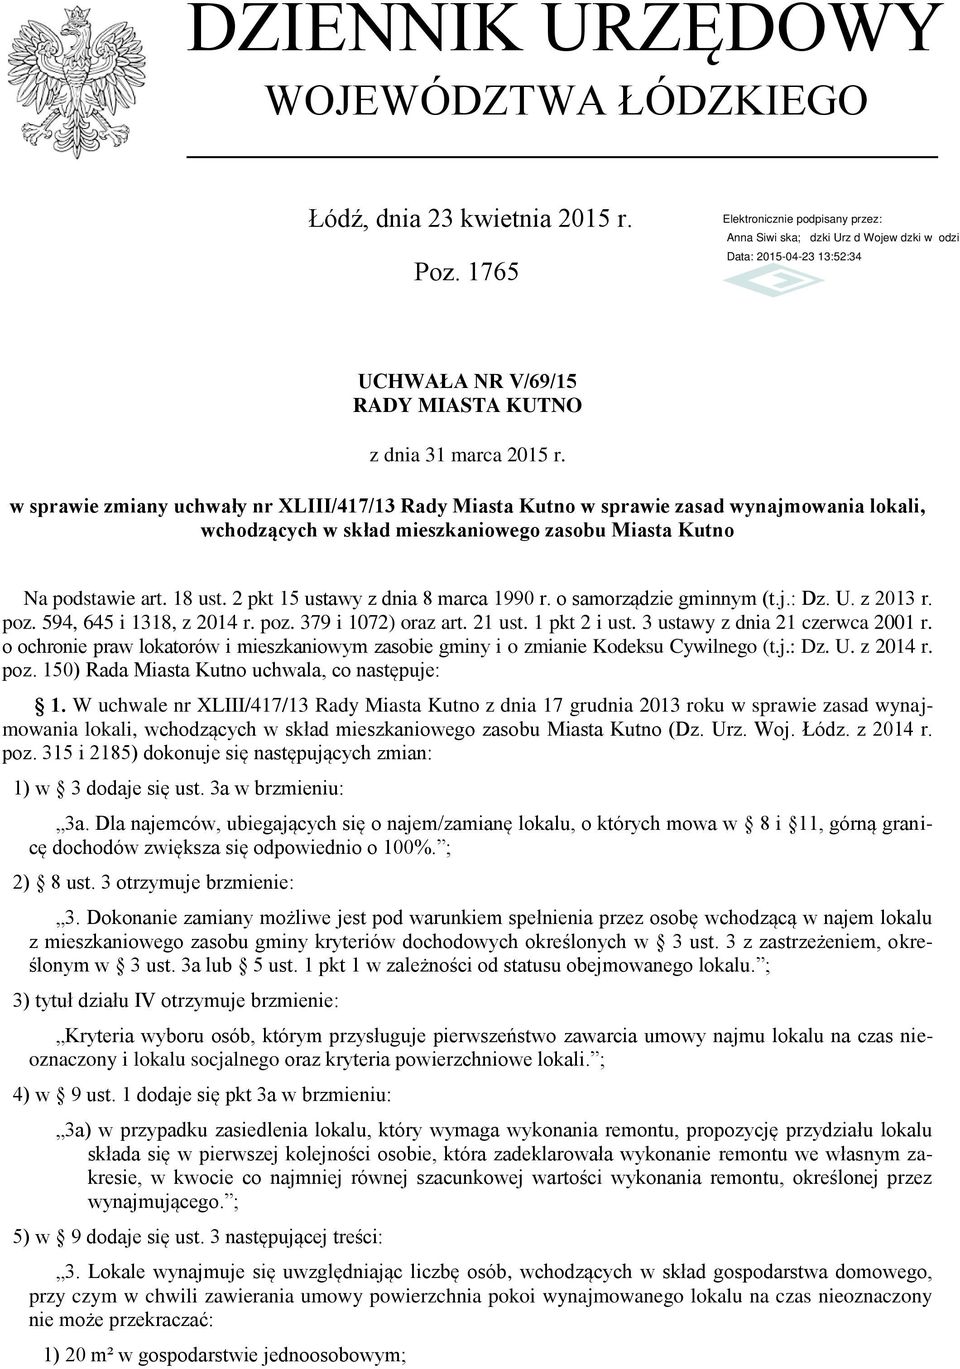 2 pkt 15 ustawy z dnia 8 marca 1990 r. o samorządzie gminnym (t.j.: Dz. U. z 2013 r. poz. 594, 645 i 1318, z 2014 r. poz. 379 i 1072) oraz art. 21 ust. 1 pkt 2 i ust.